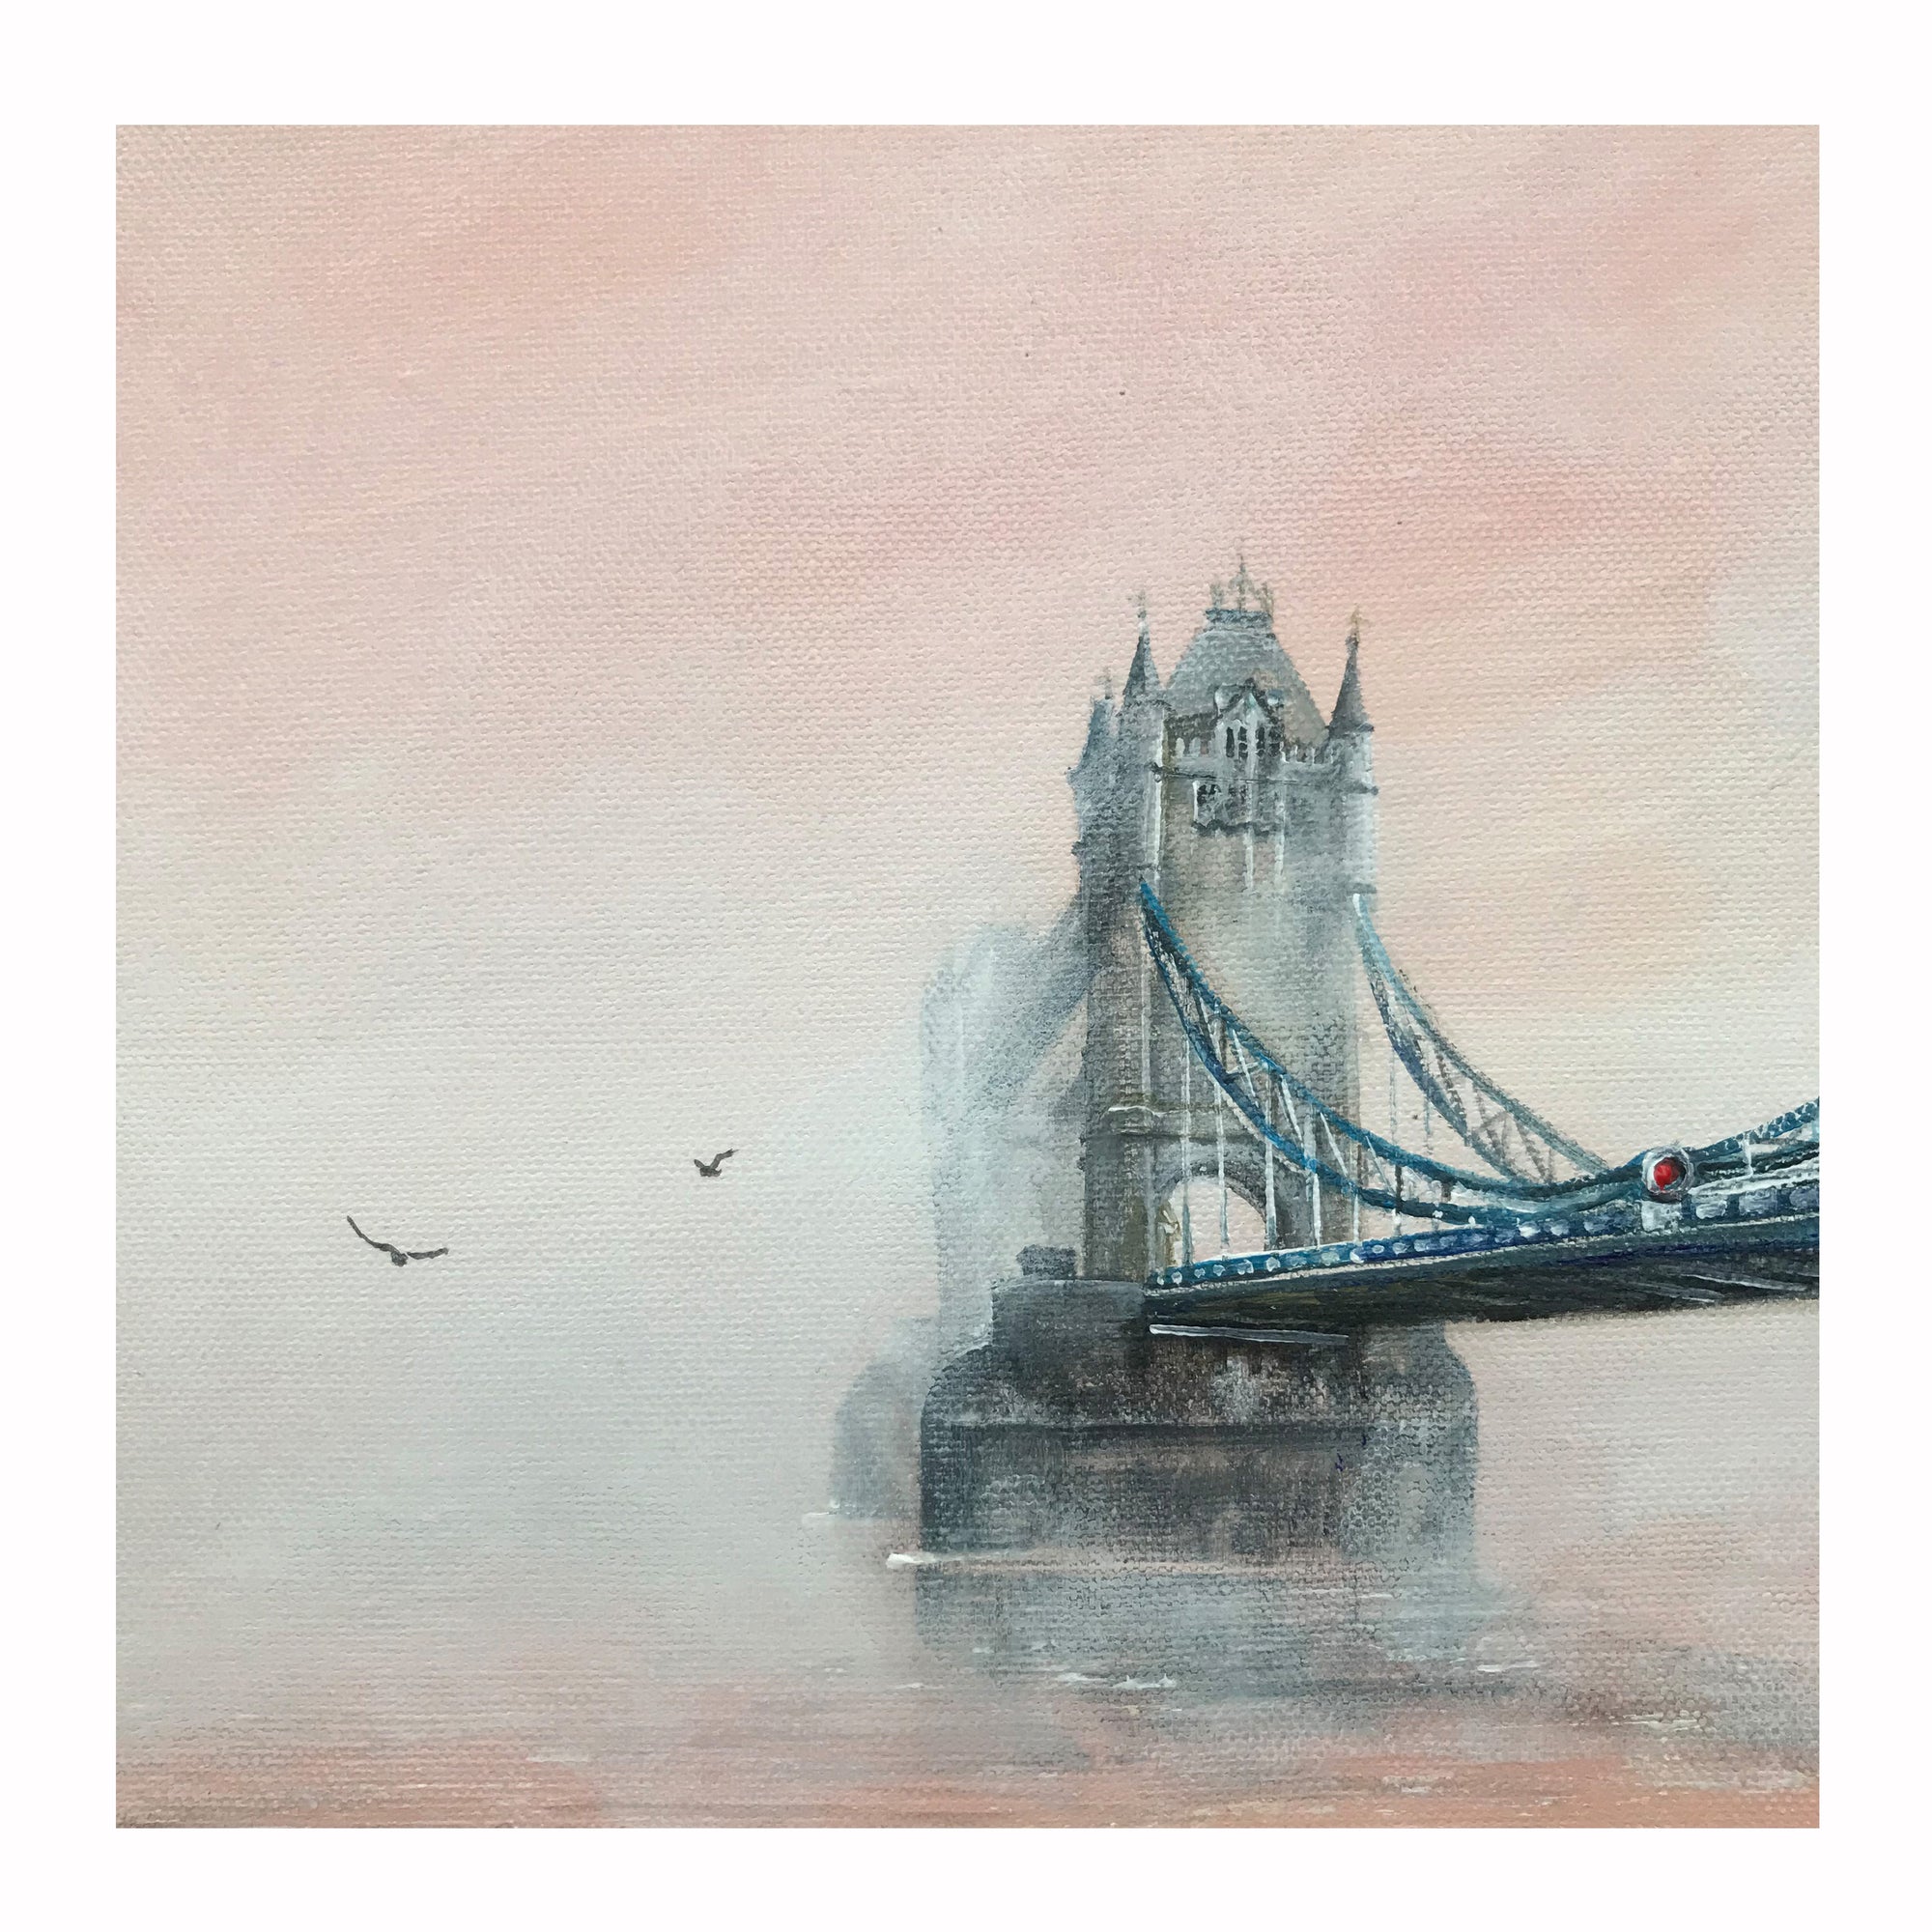 Tower Bridge in mist, by Ed J Bucknall